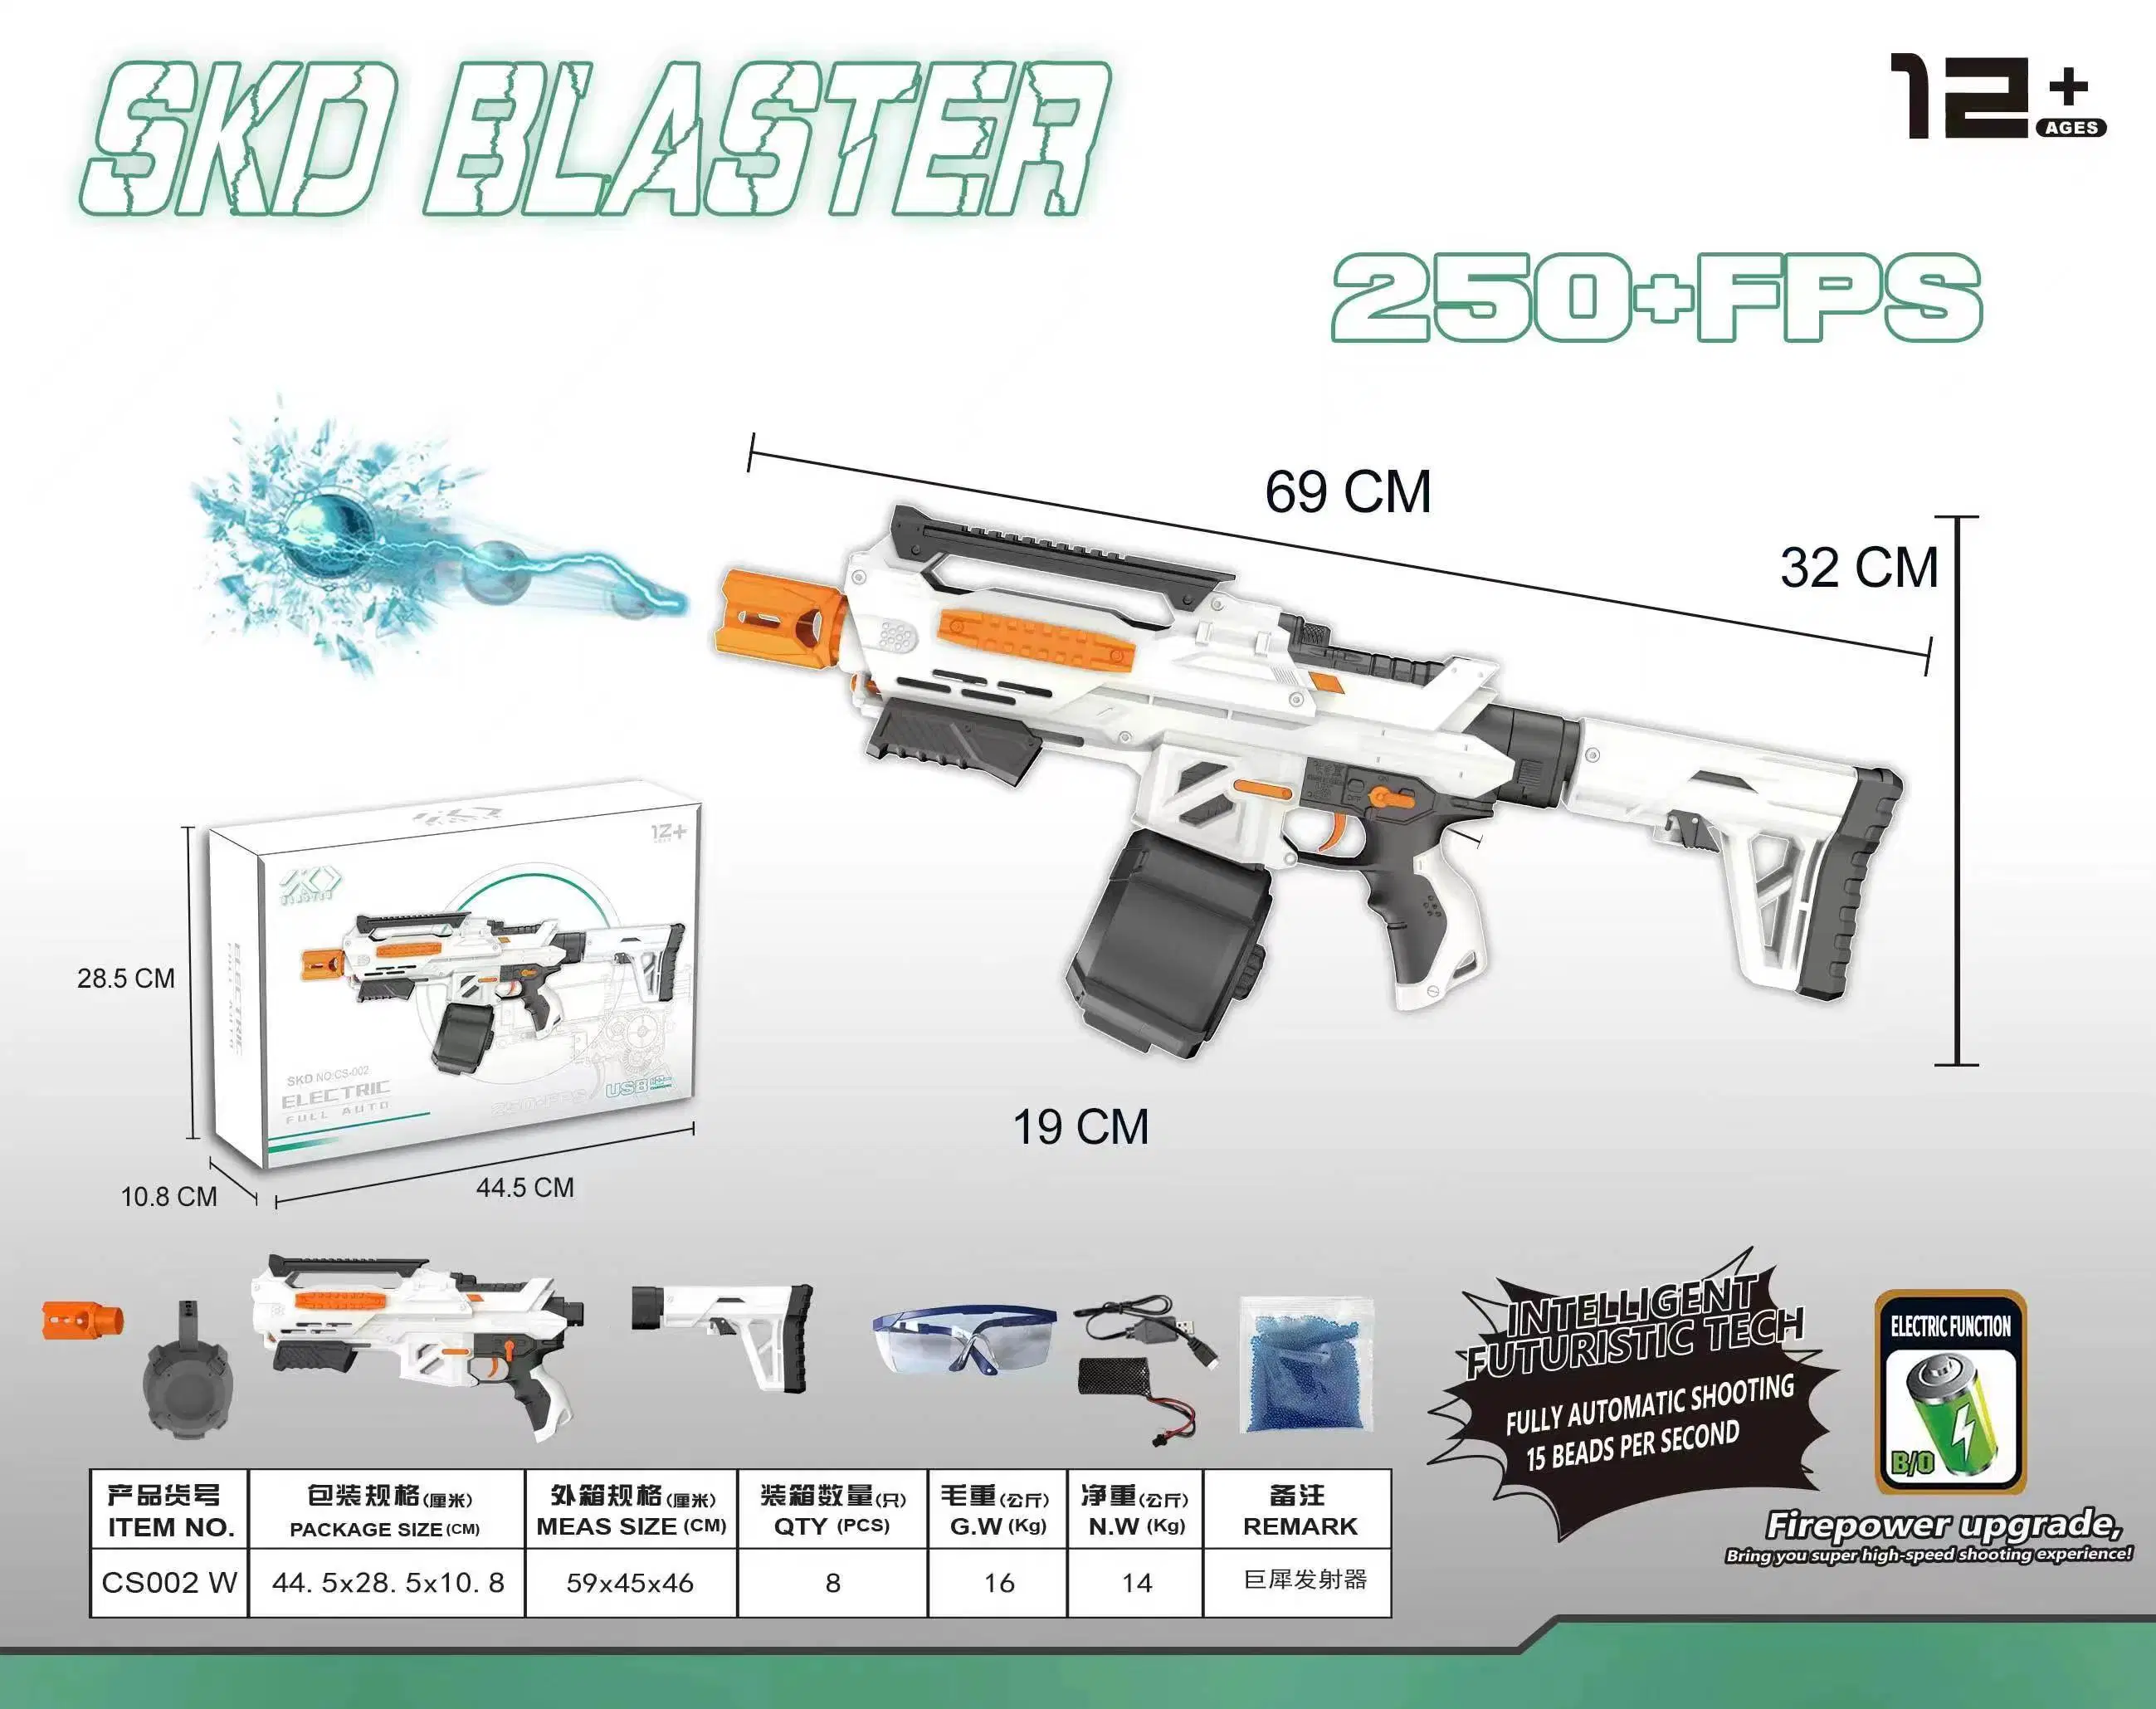 SKD Blaster bola de gel eléctrico Blaster Alta velocidad totalmente automático Pistola de gel de juguete Orbeez de bola de agua recargable para salpicaduras Blaster Juego al aire libre